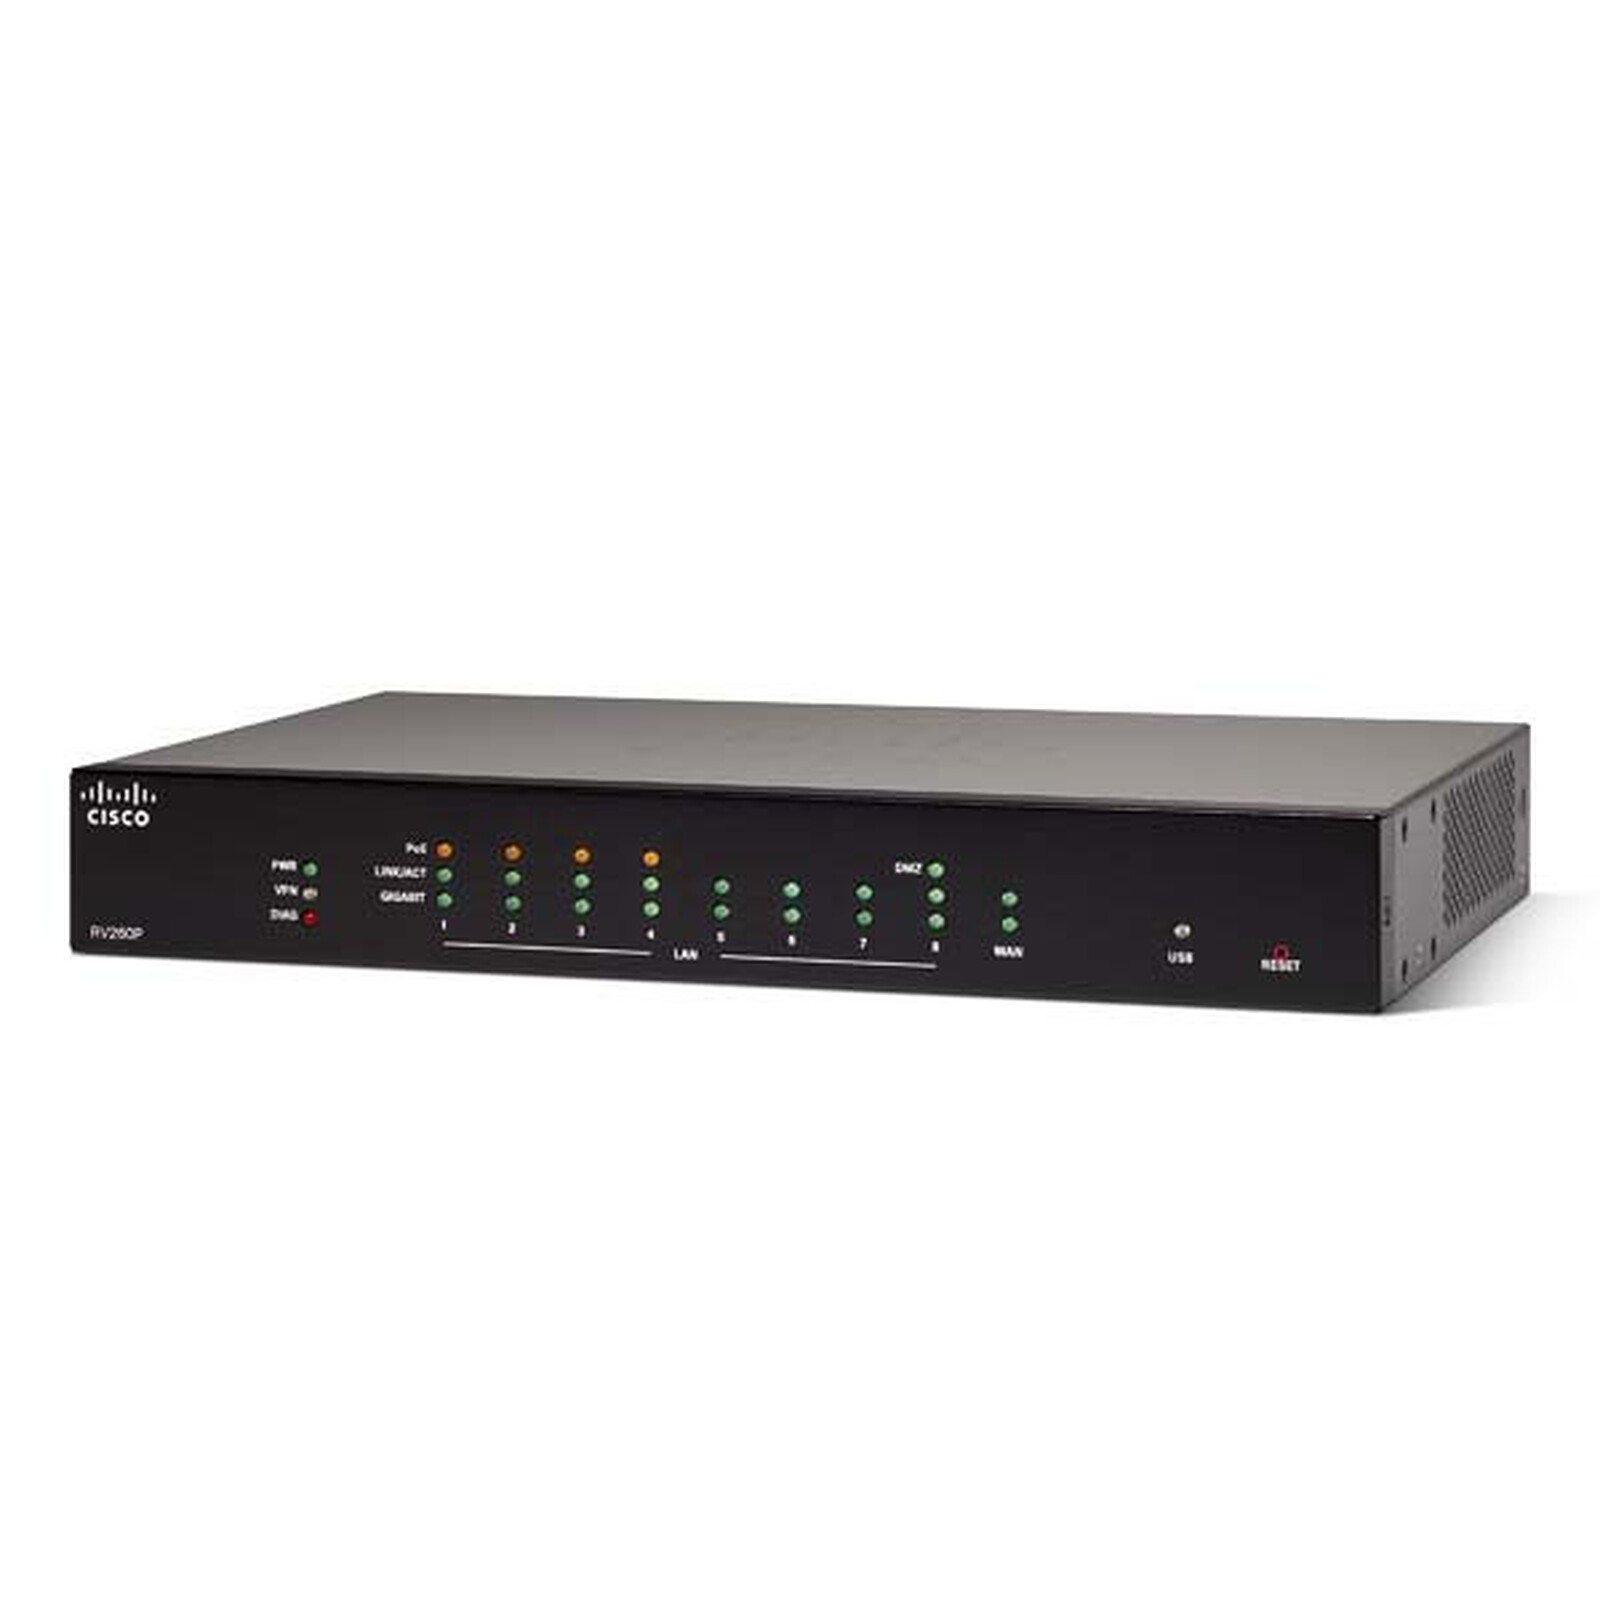 TP-LINK ER605 V2 - Modem & routeur - Garantie 3 ans LDLC